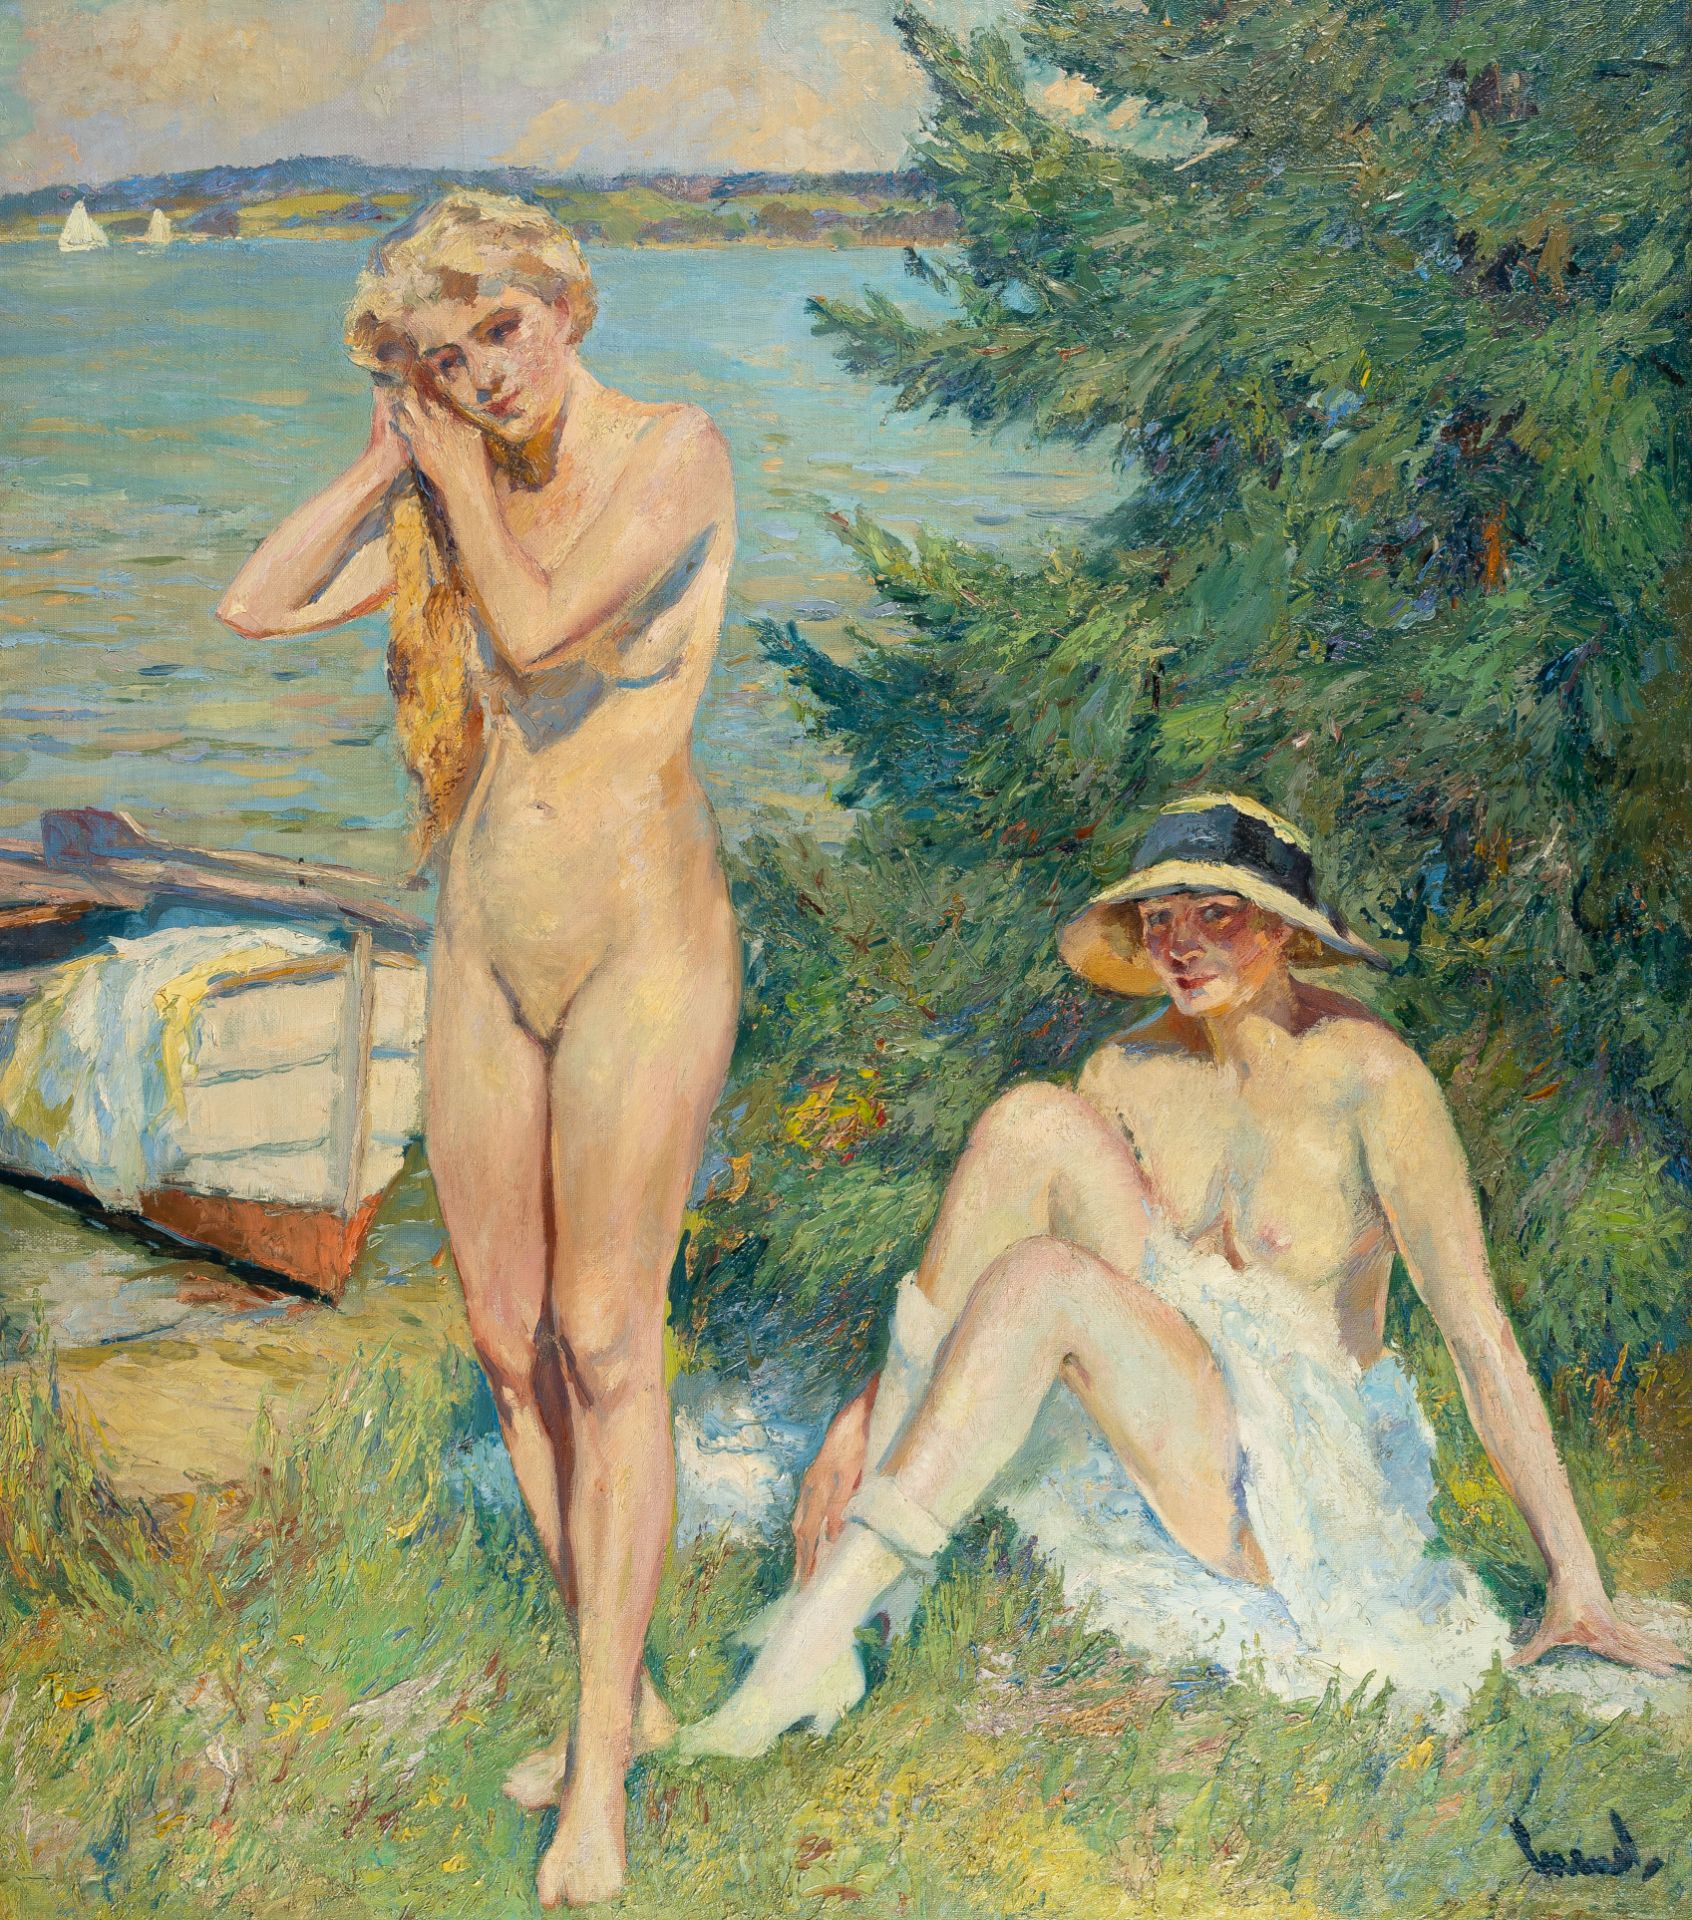 Edward Cucuel – Zwei badende Frauen am See (Two women bathing in a lake)